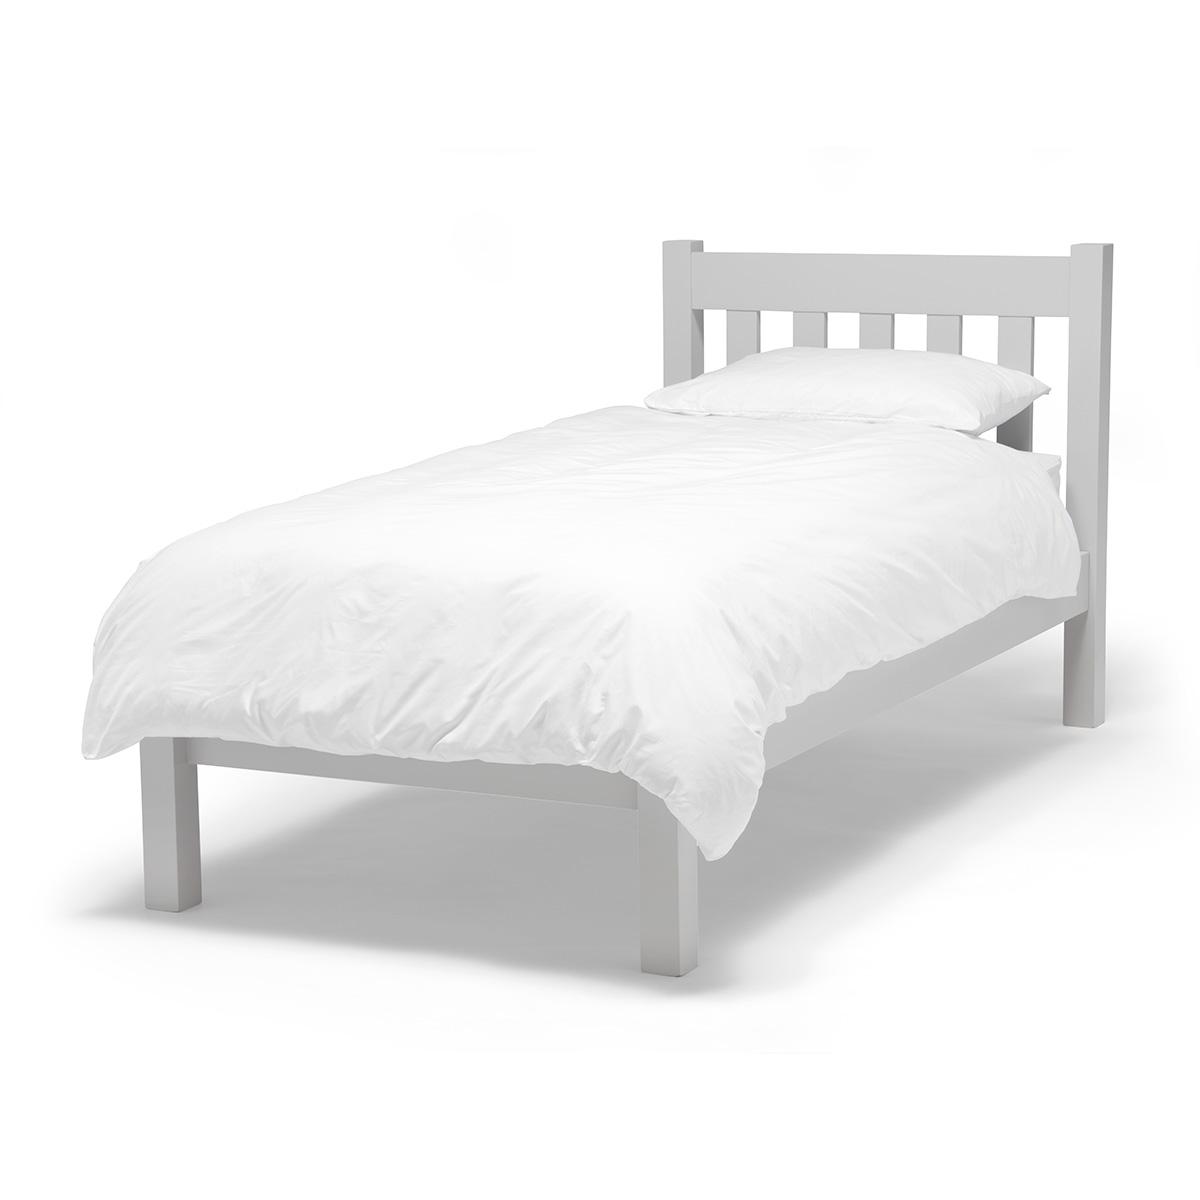 EVEB915 Single Everly Bed Base